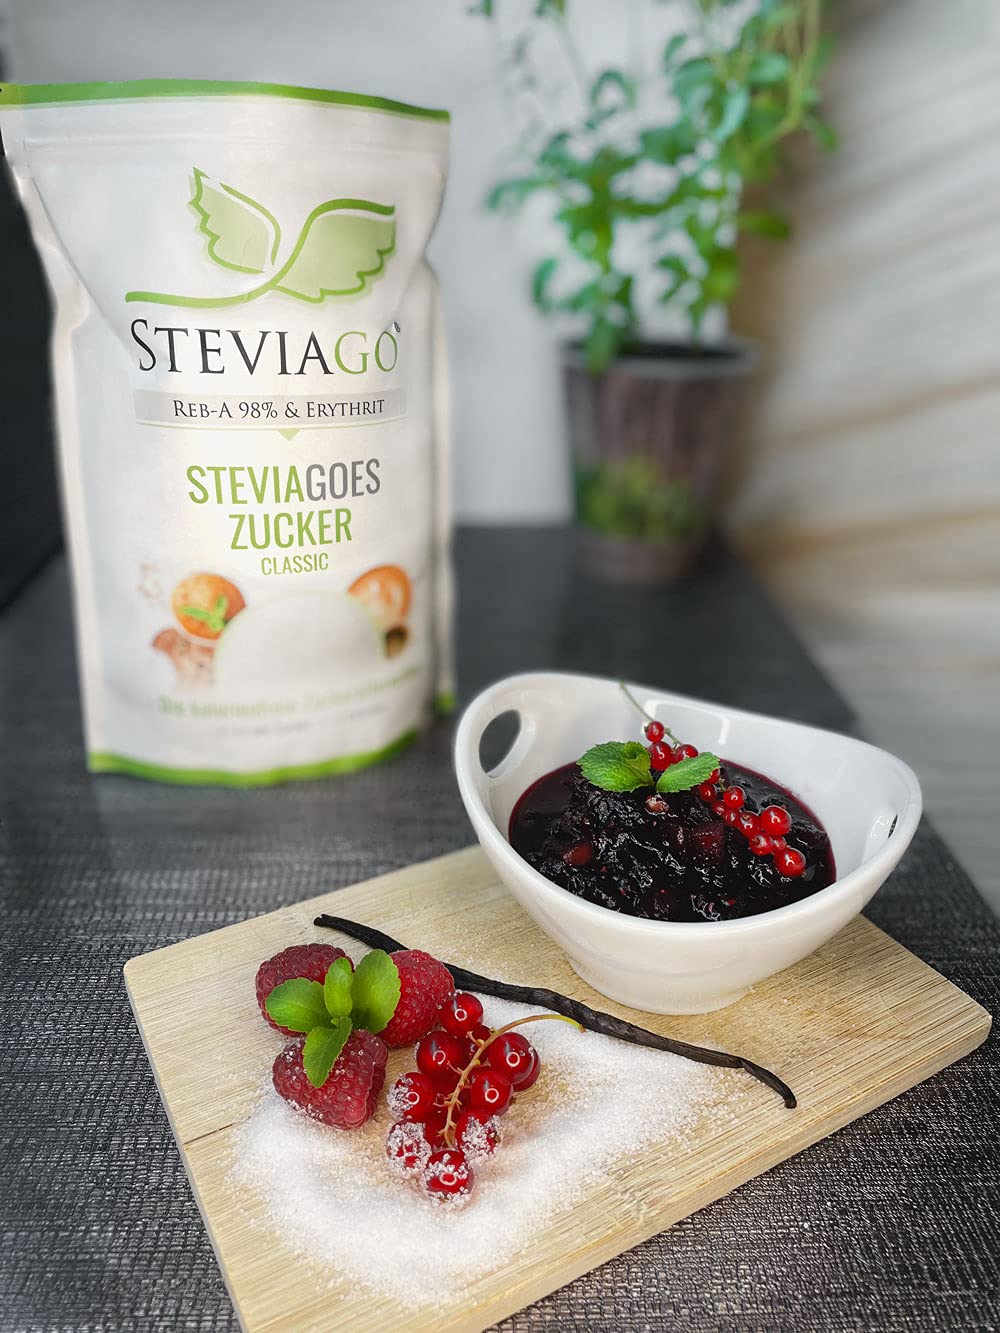 STEVIAGOES Zucker - Classic 1kg - Erythrit und Stevia